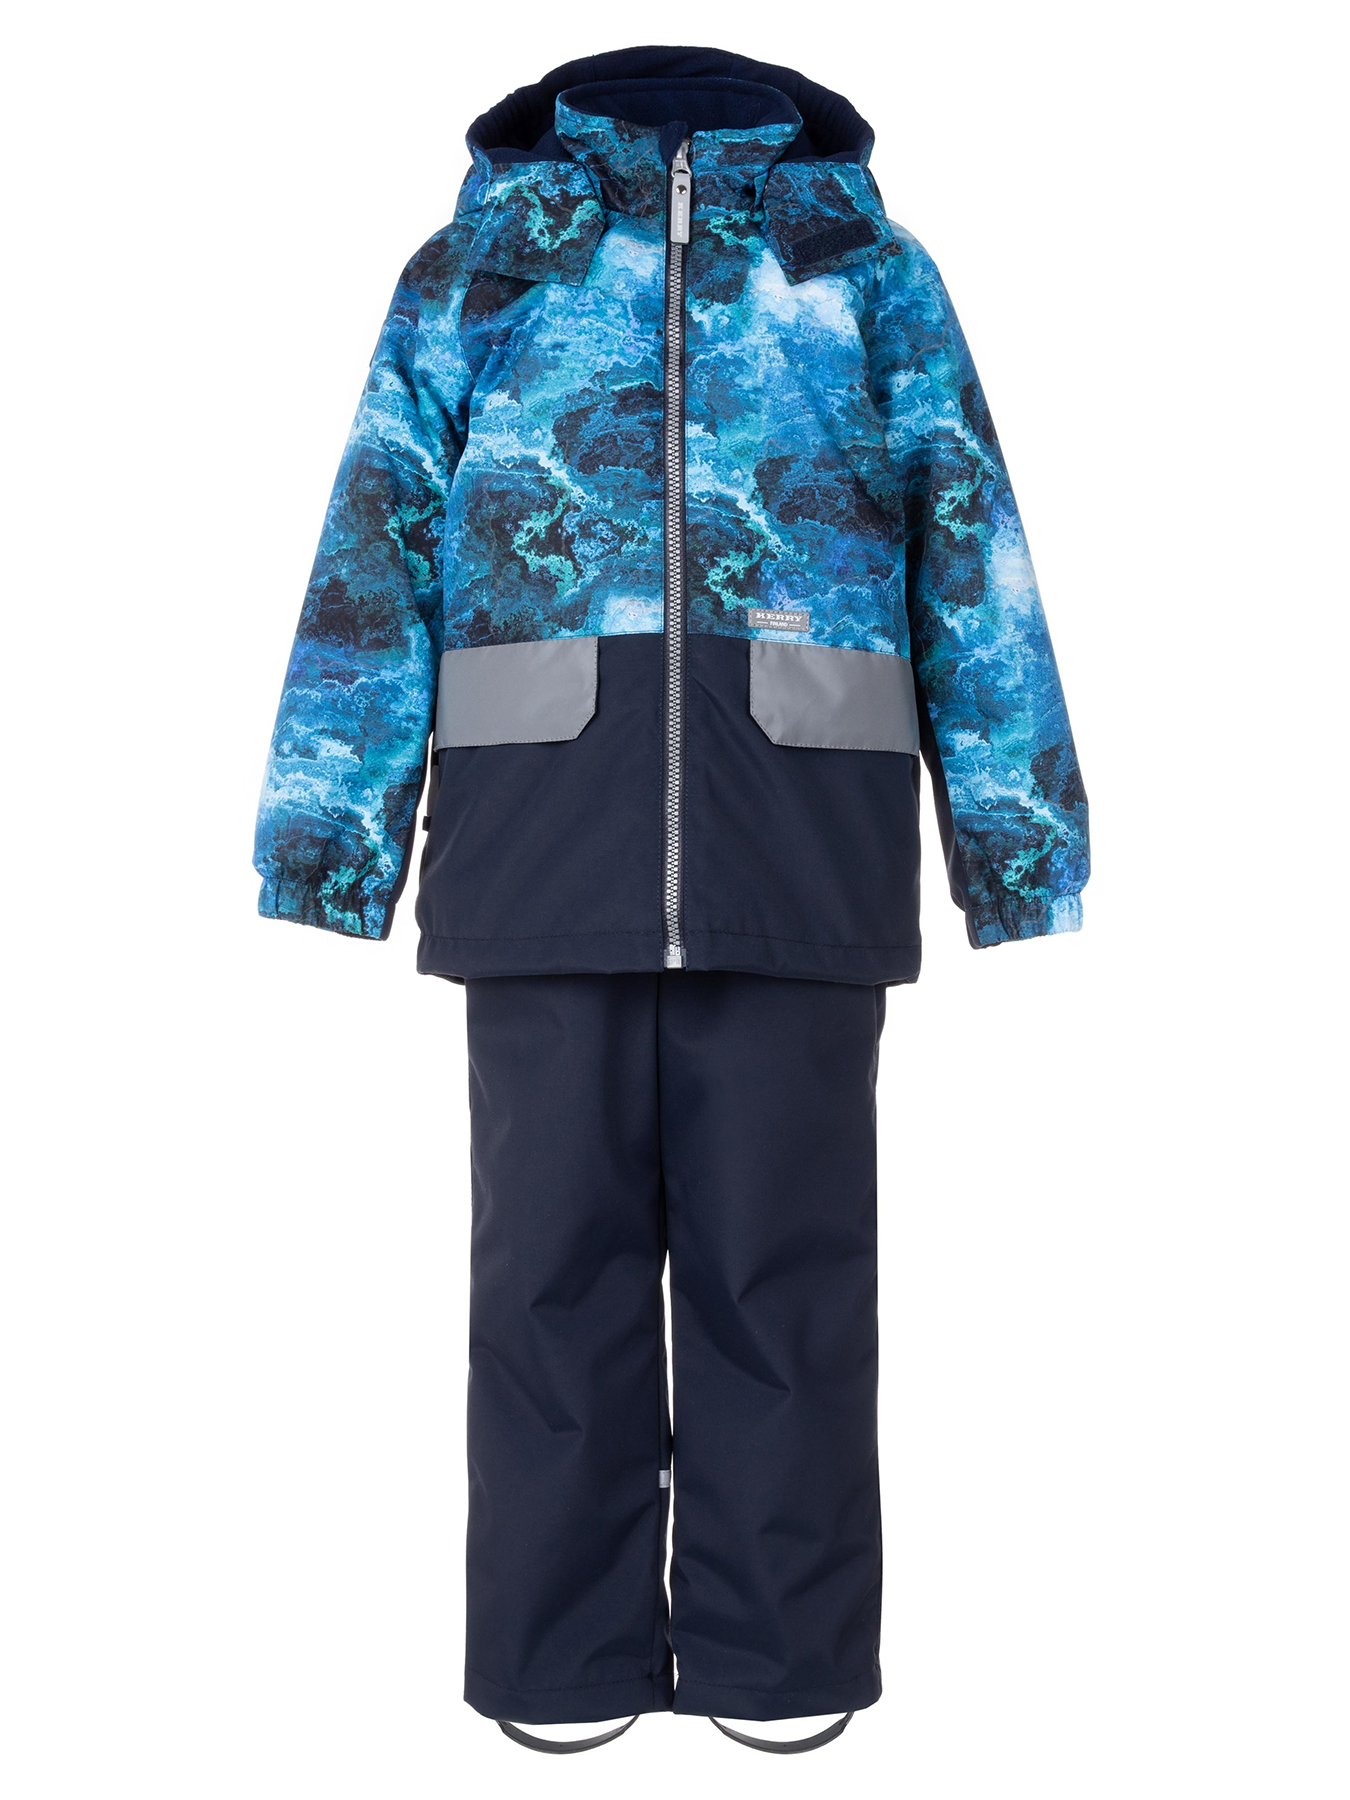 Комплект верхней одежды KERRY TOMI K24030, 6310-синий с рисунком,темно-синий, 116